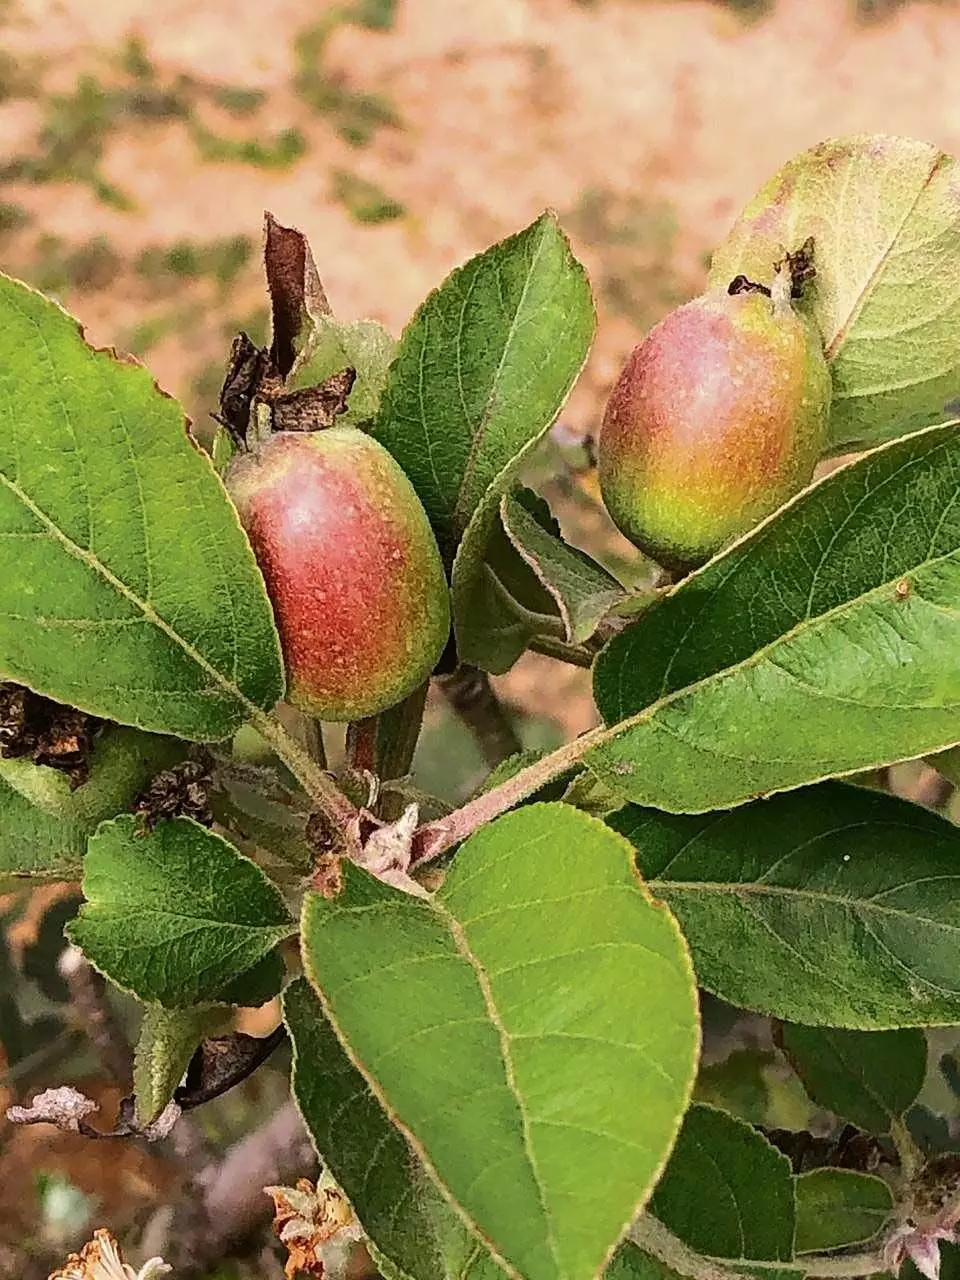 सर्वोत्कृष्ट सेब आखिरकार हिमाचल प्रदेश की पहाड़ियों से निकलकर गर्म मैदानों में पहुंच गया